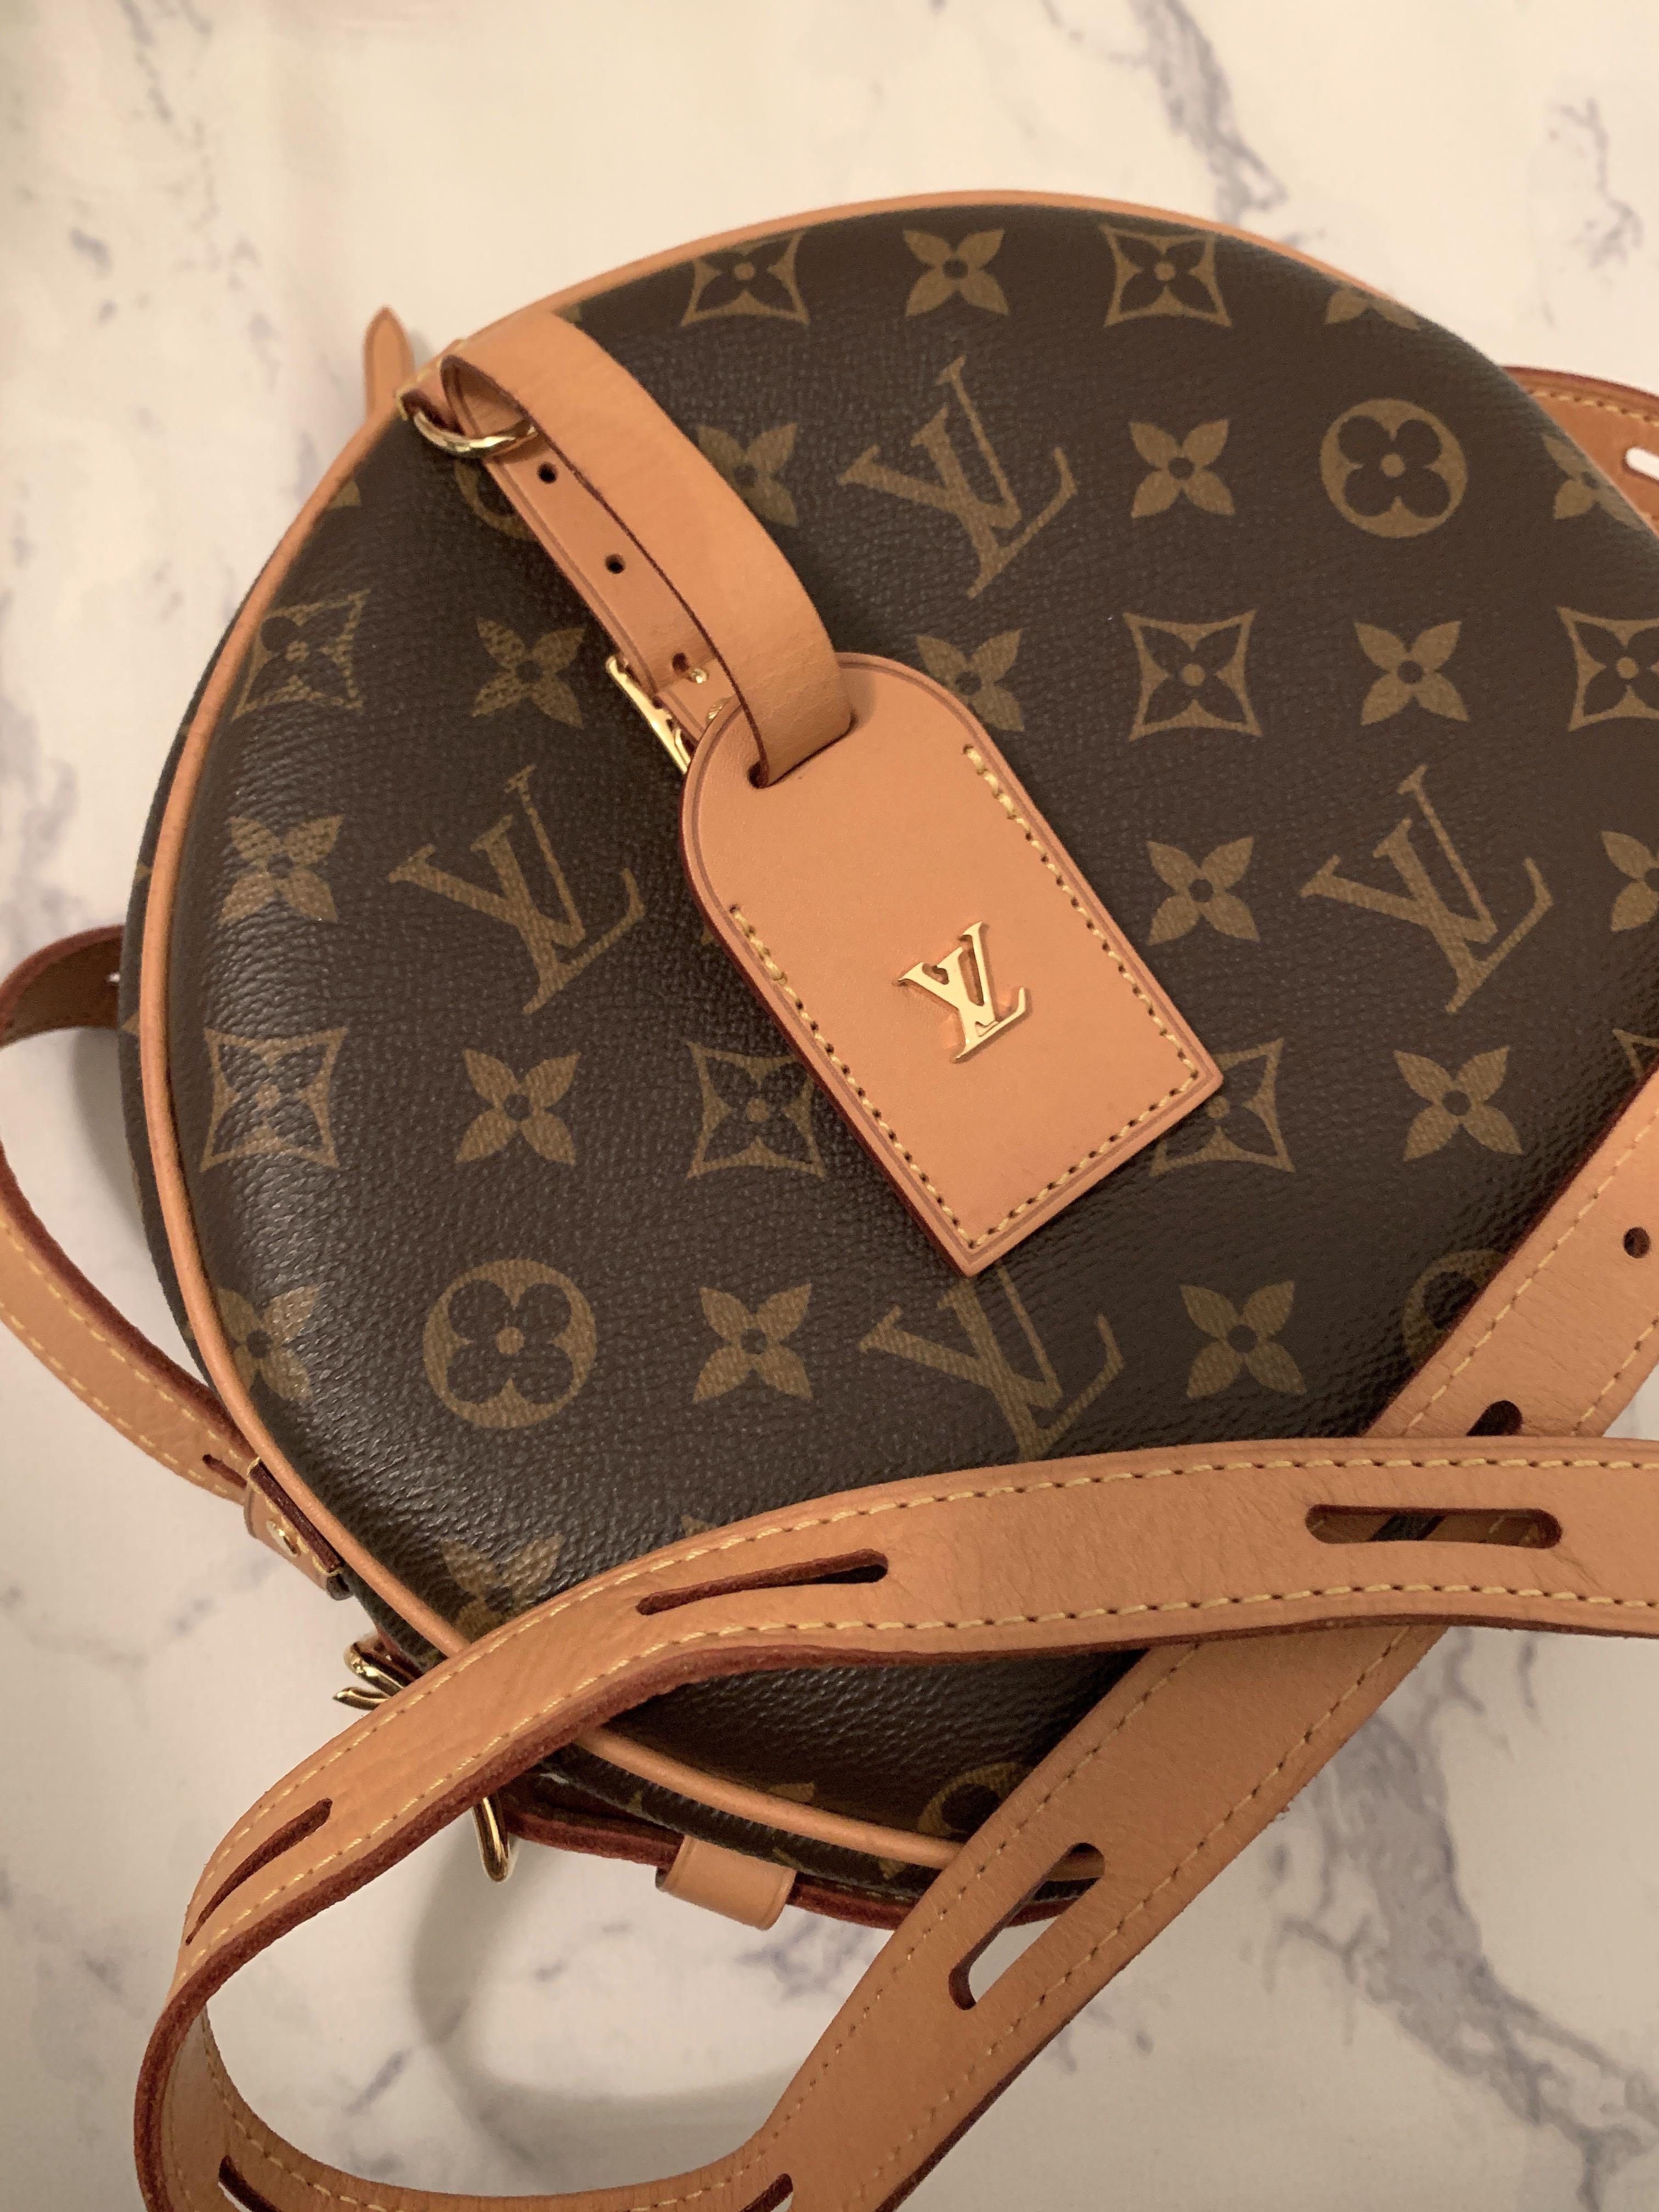 Louis Vuitton - Authenticated Boîte Chapeau Souple Handbag - Cloth Brown Plain for Women, Good Condition